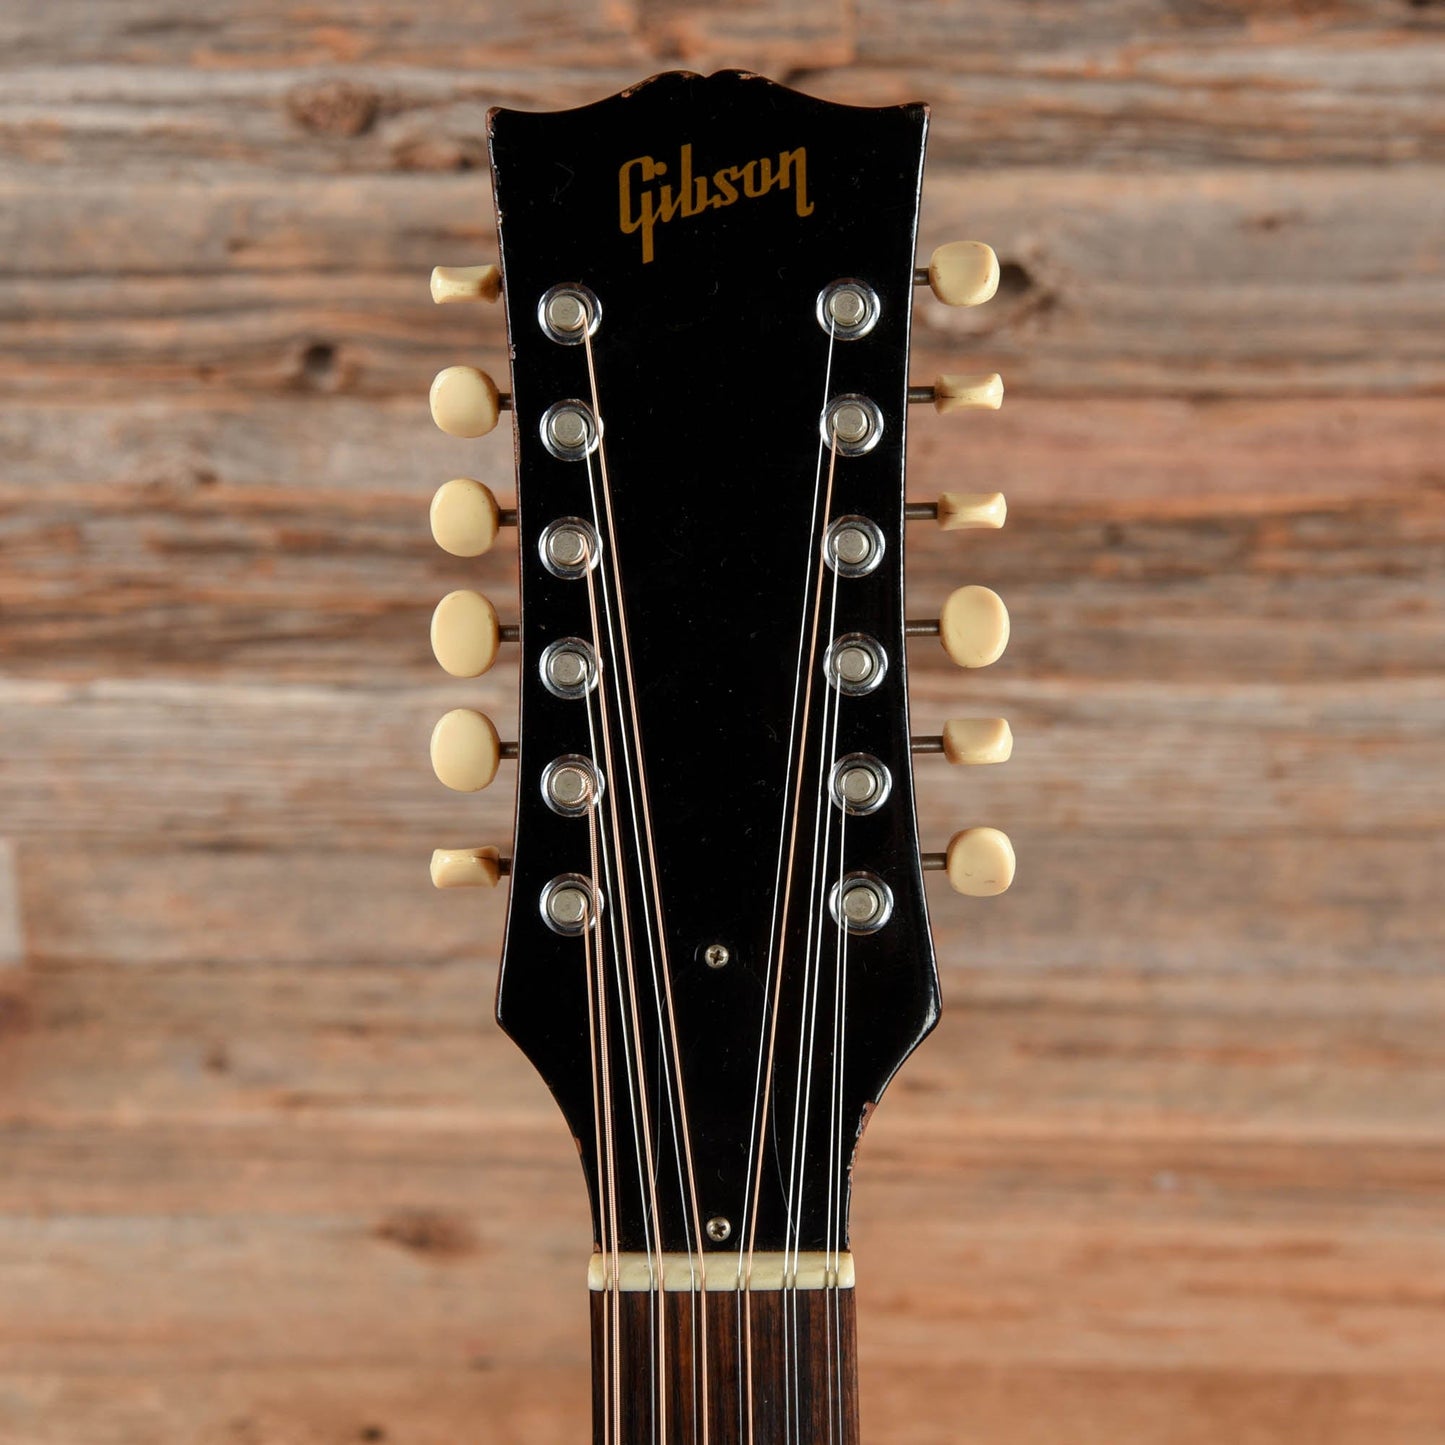 Gibson B25-12 Cherry Sunburst 1967 Acoustic Guitars / Concert